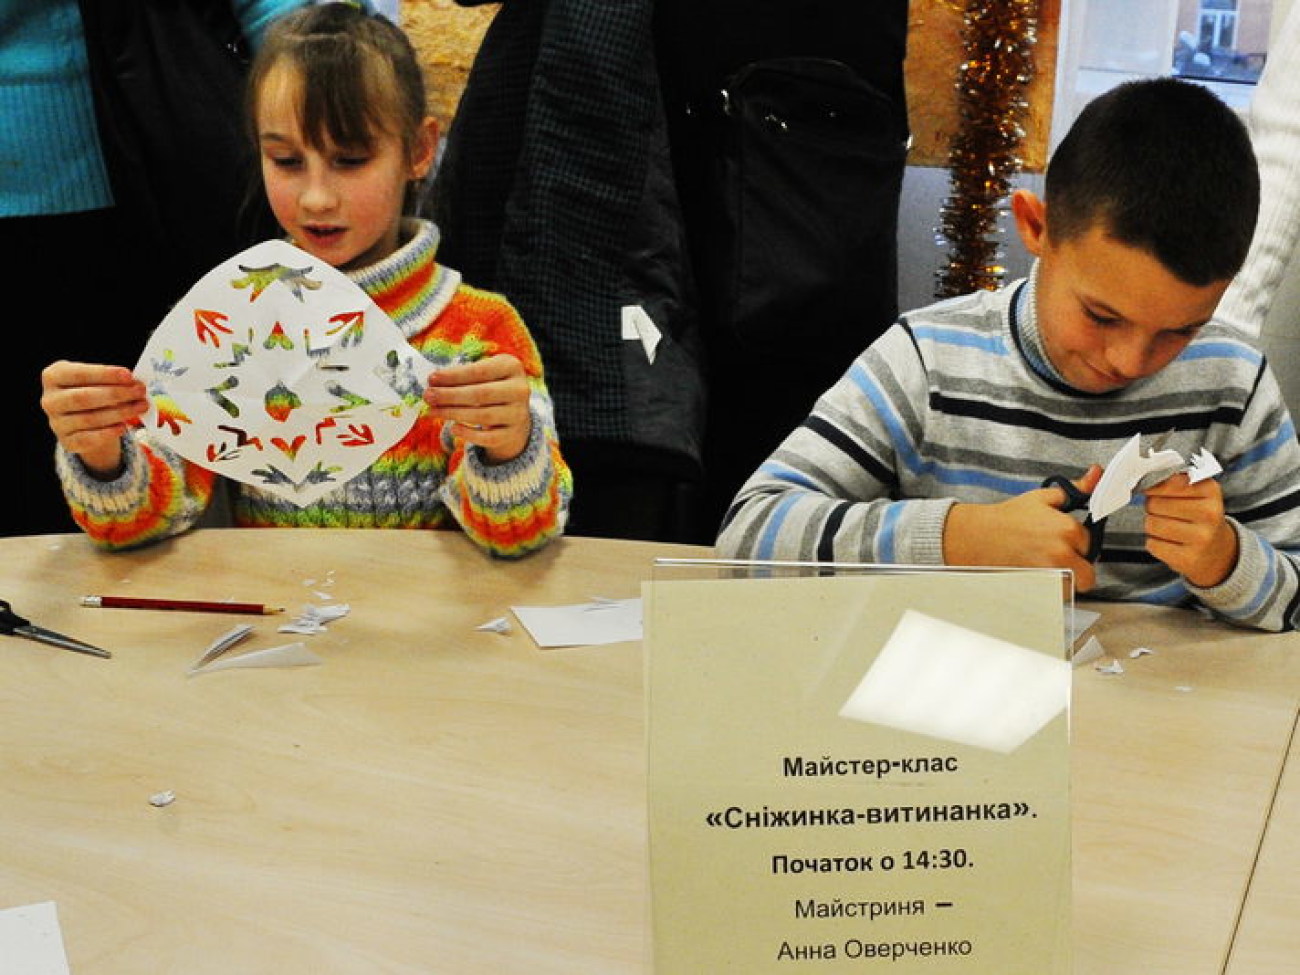 В Киеве можно увидеть авторские елочные игрушки, 8 декабря 2012г.